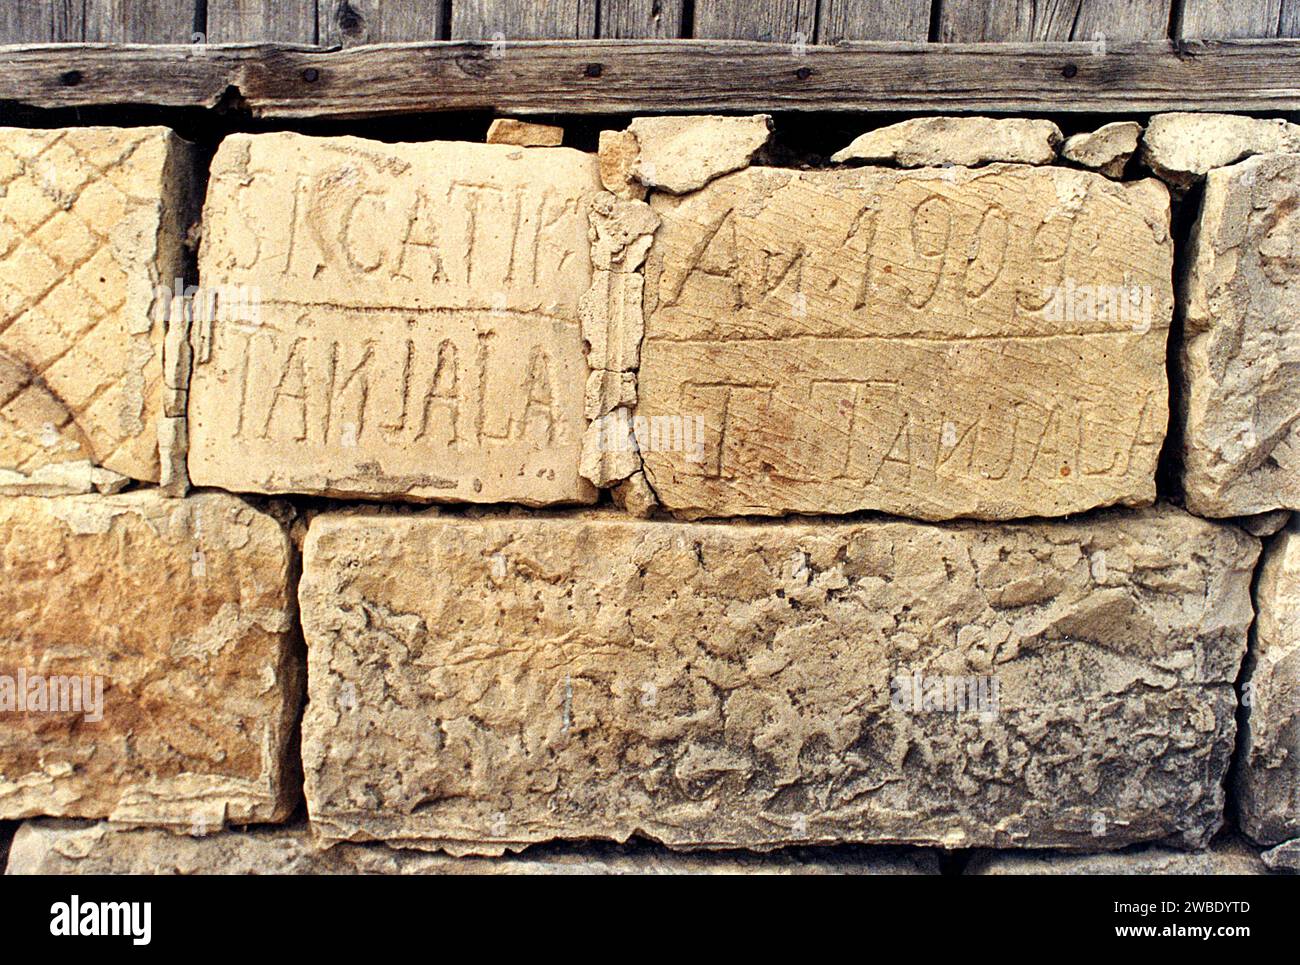 Colacu, Contea di Vrancea, Romania, circa 1990. Iscrizione scolpita con il nome di famiglia Tanjala e l'anno di costruzione 1909 sulla fondazione di una casa locale. Foto Stock